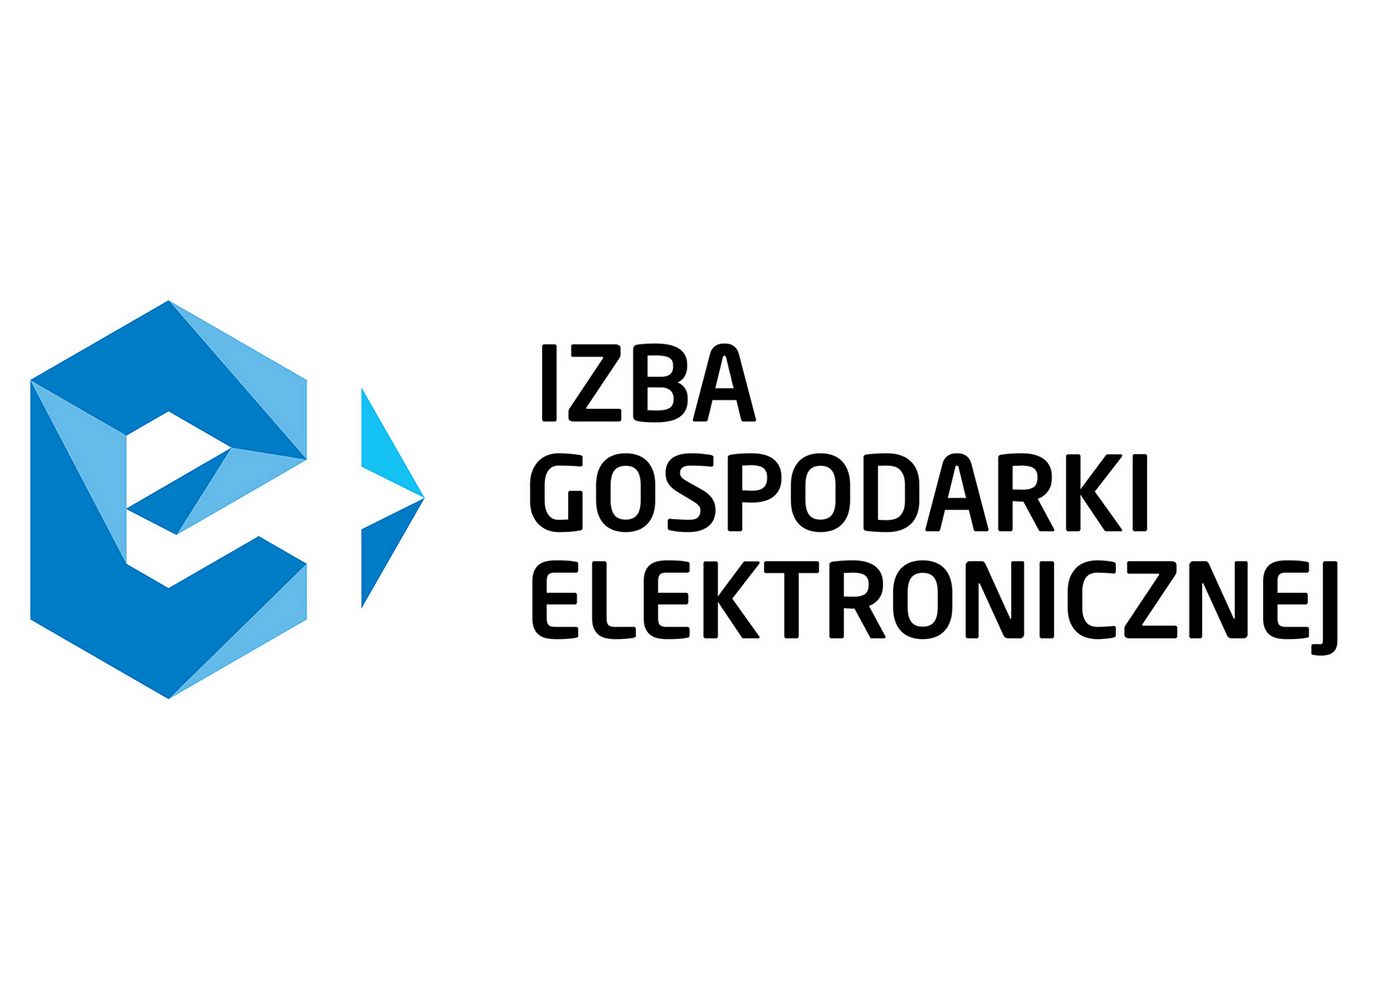 e-Izba logo.png [69.35 KB]